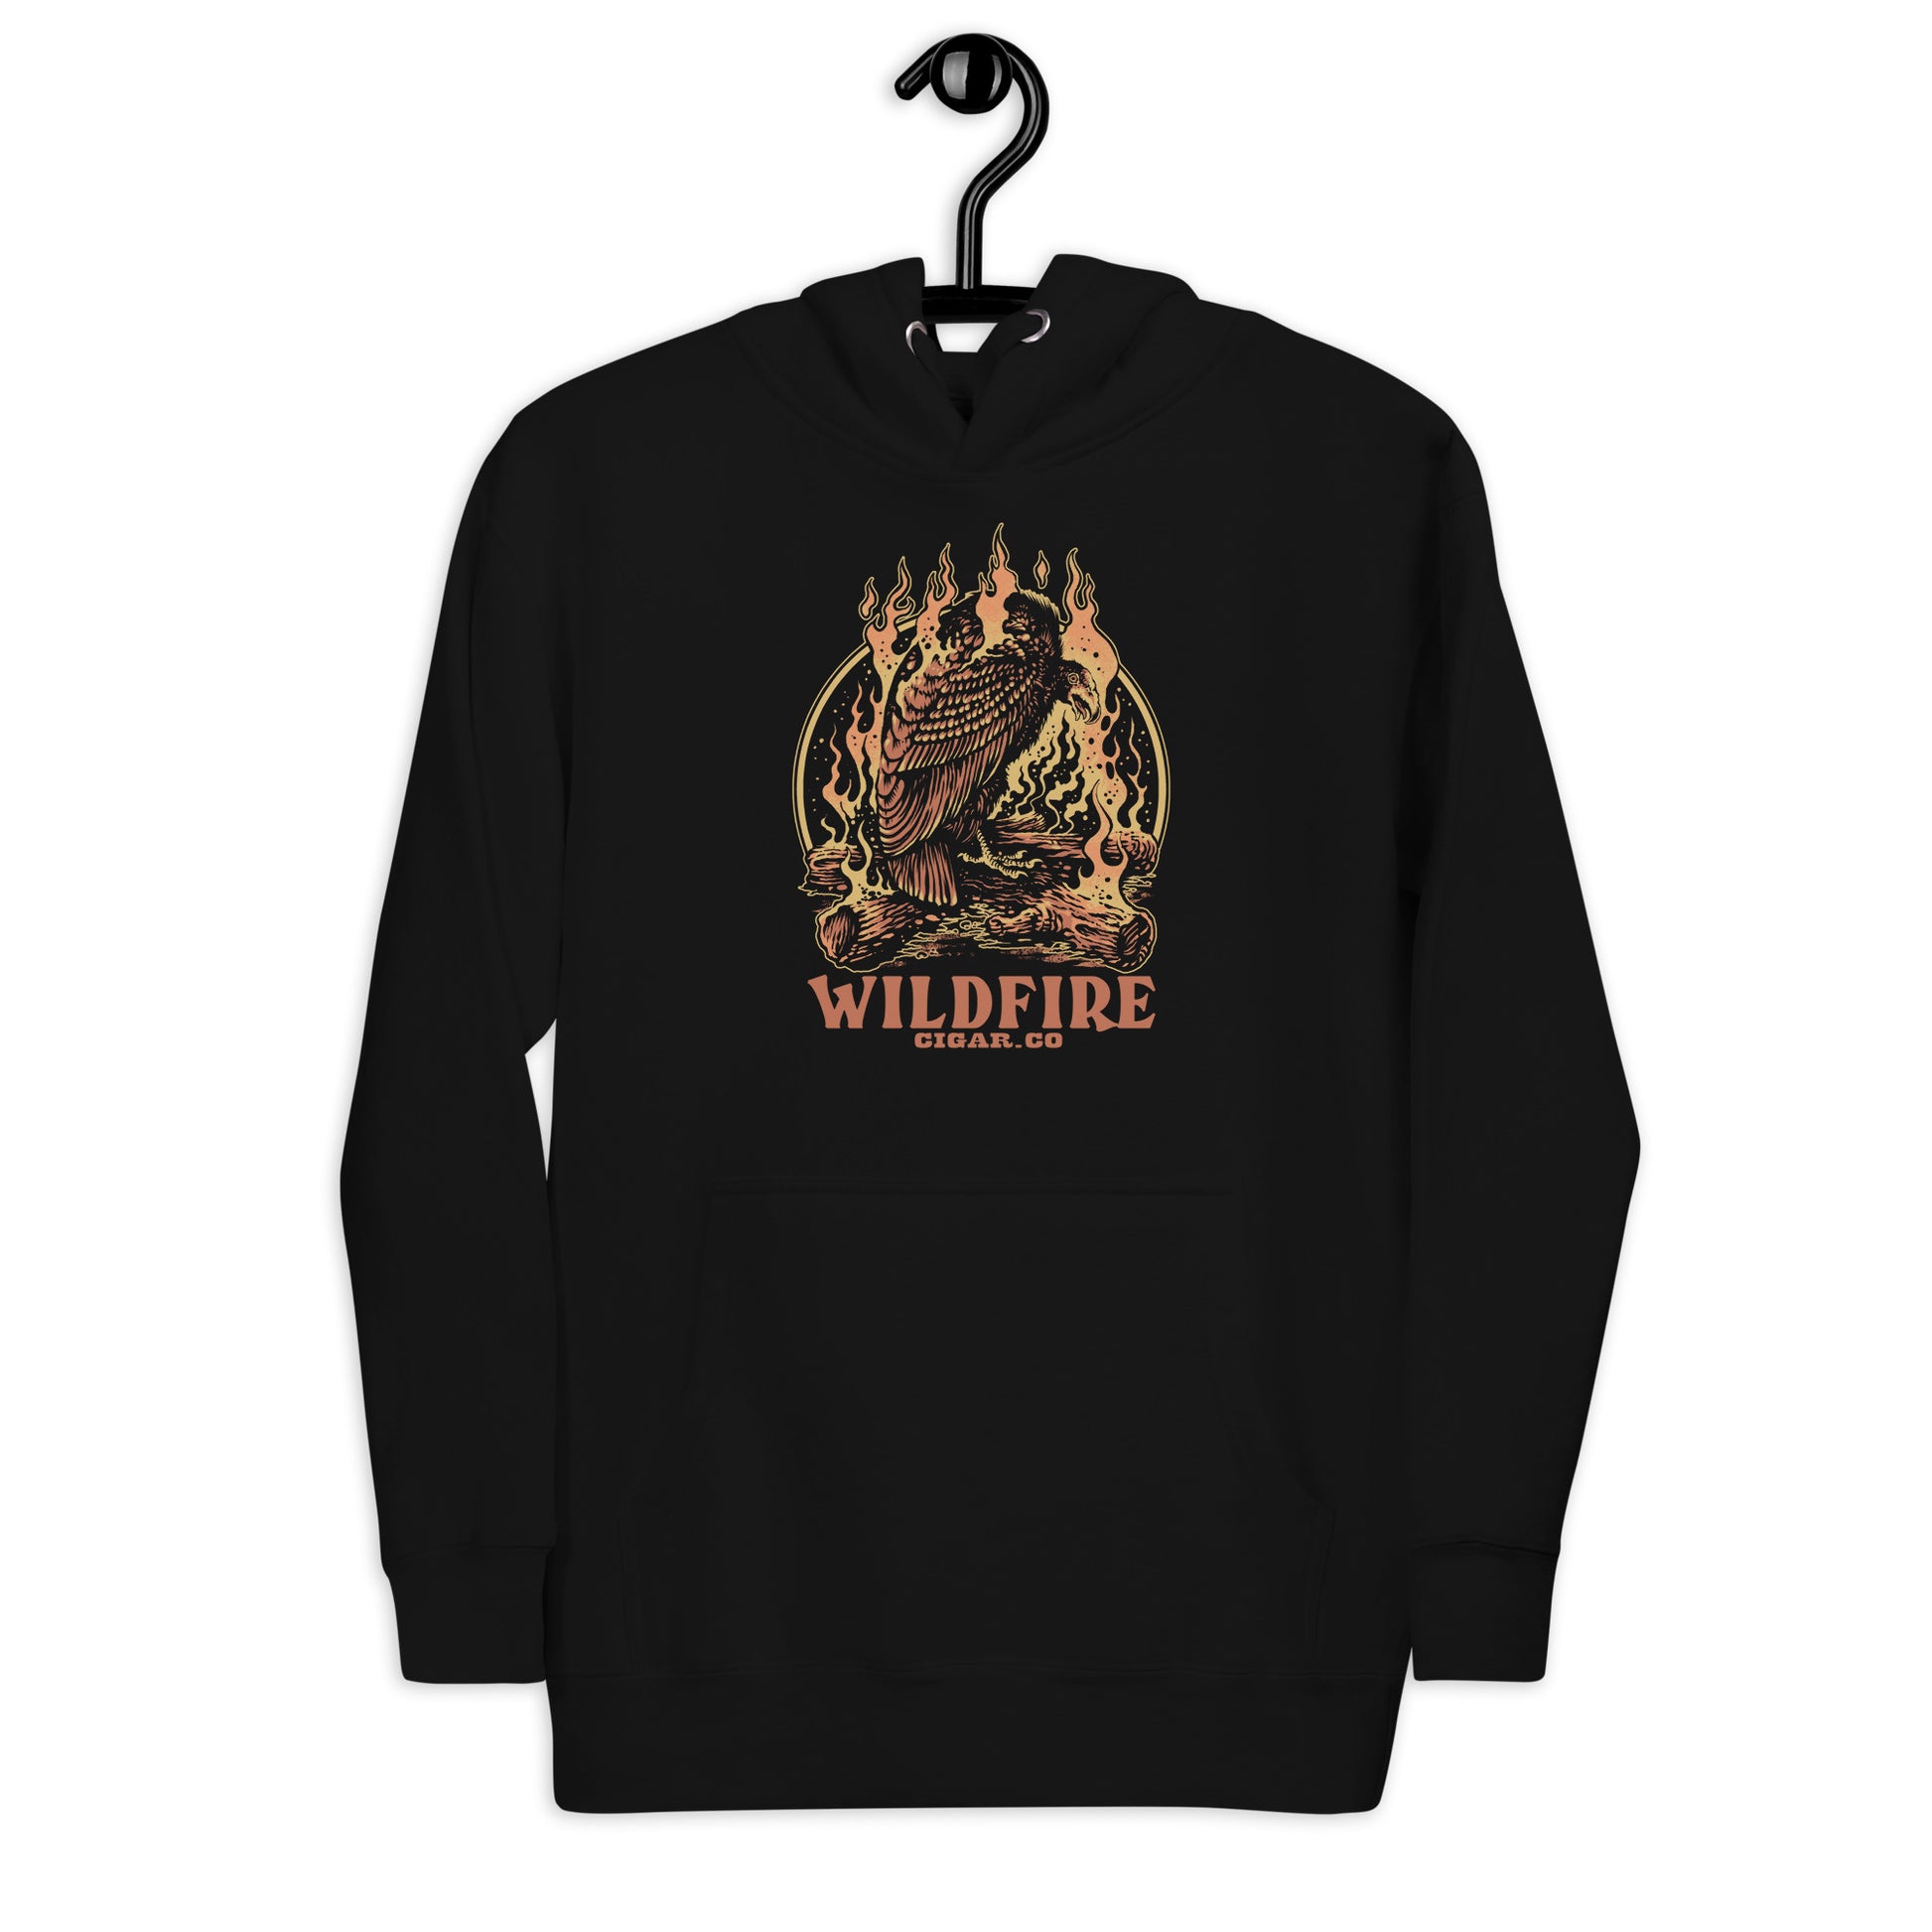 Wildfire Cigars Vulture hoodie on black premium cigar hoodie